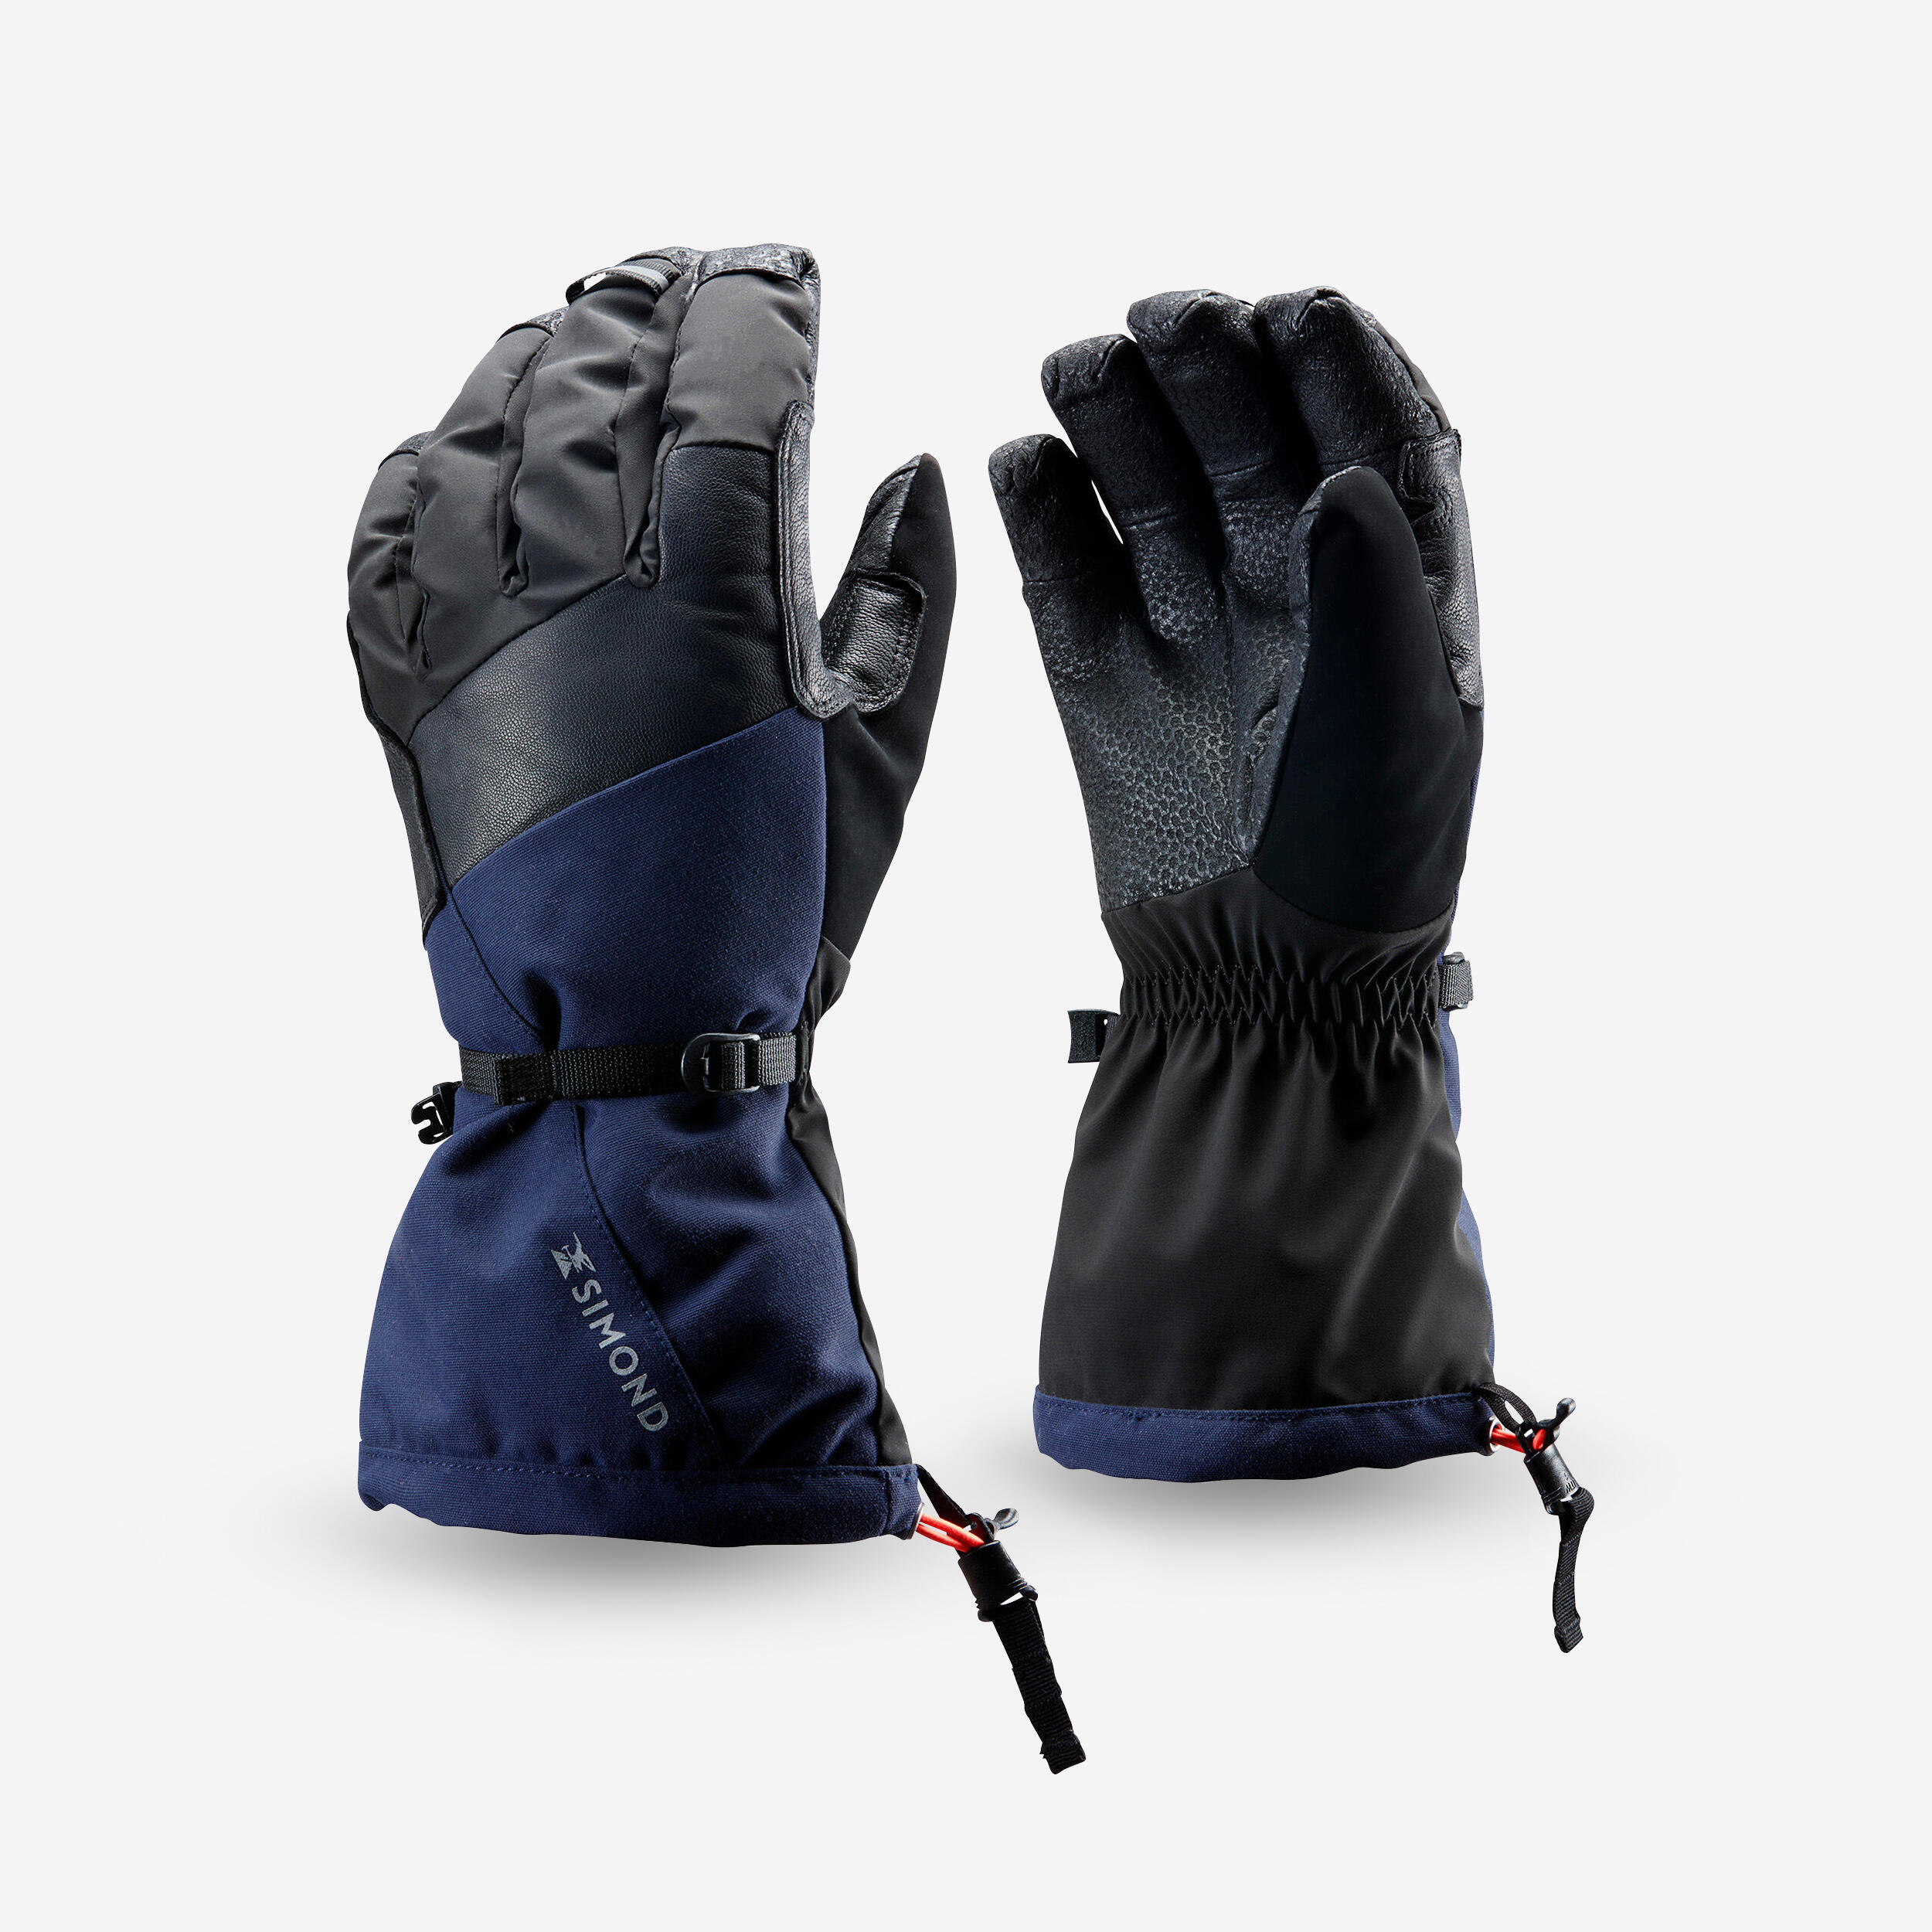 SIMOND 2-in-1 waterproof mountaineering gloves, black